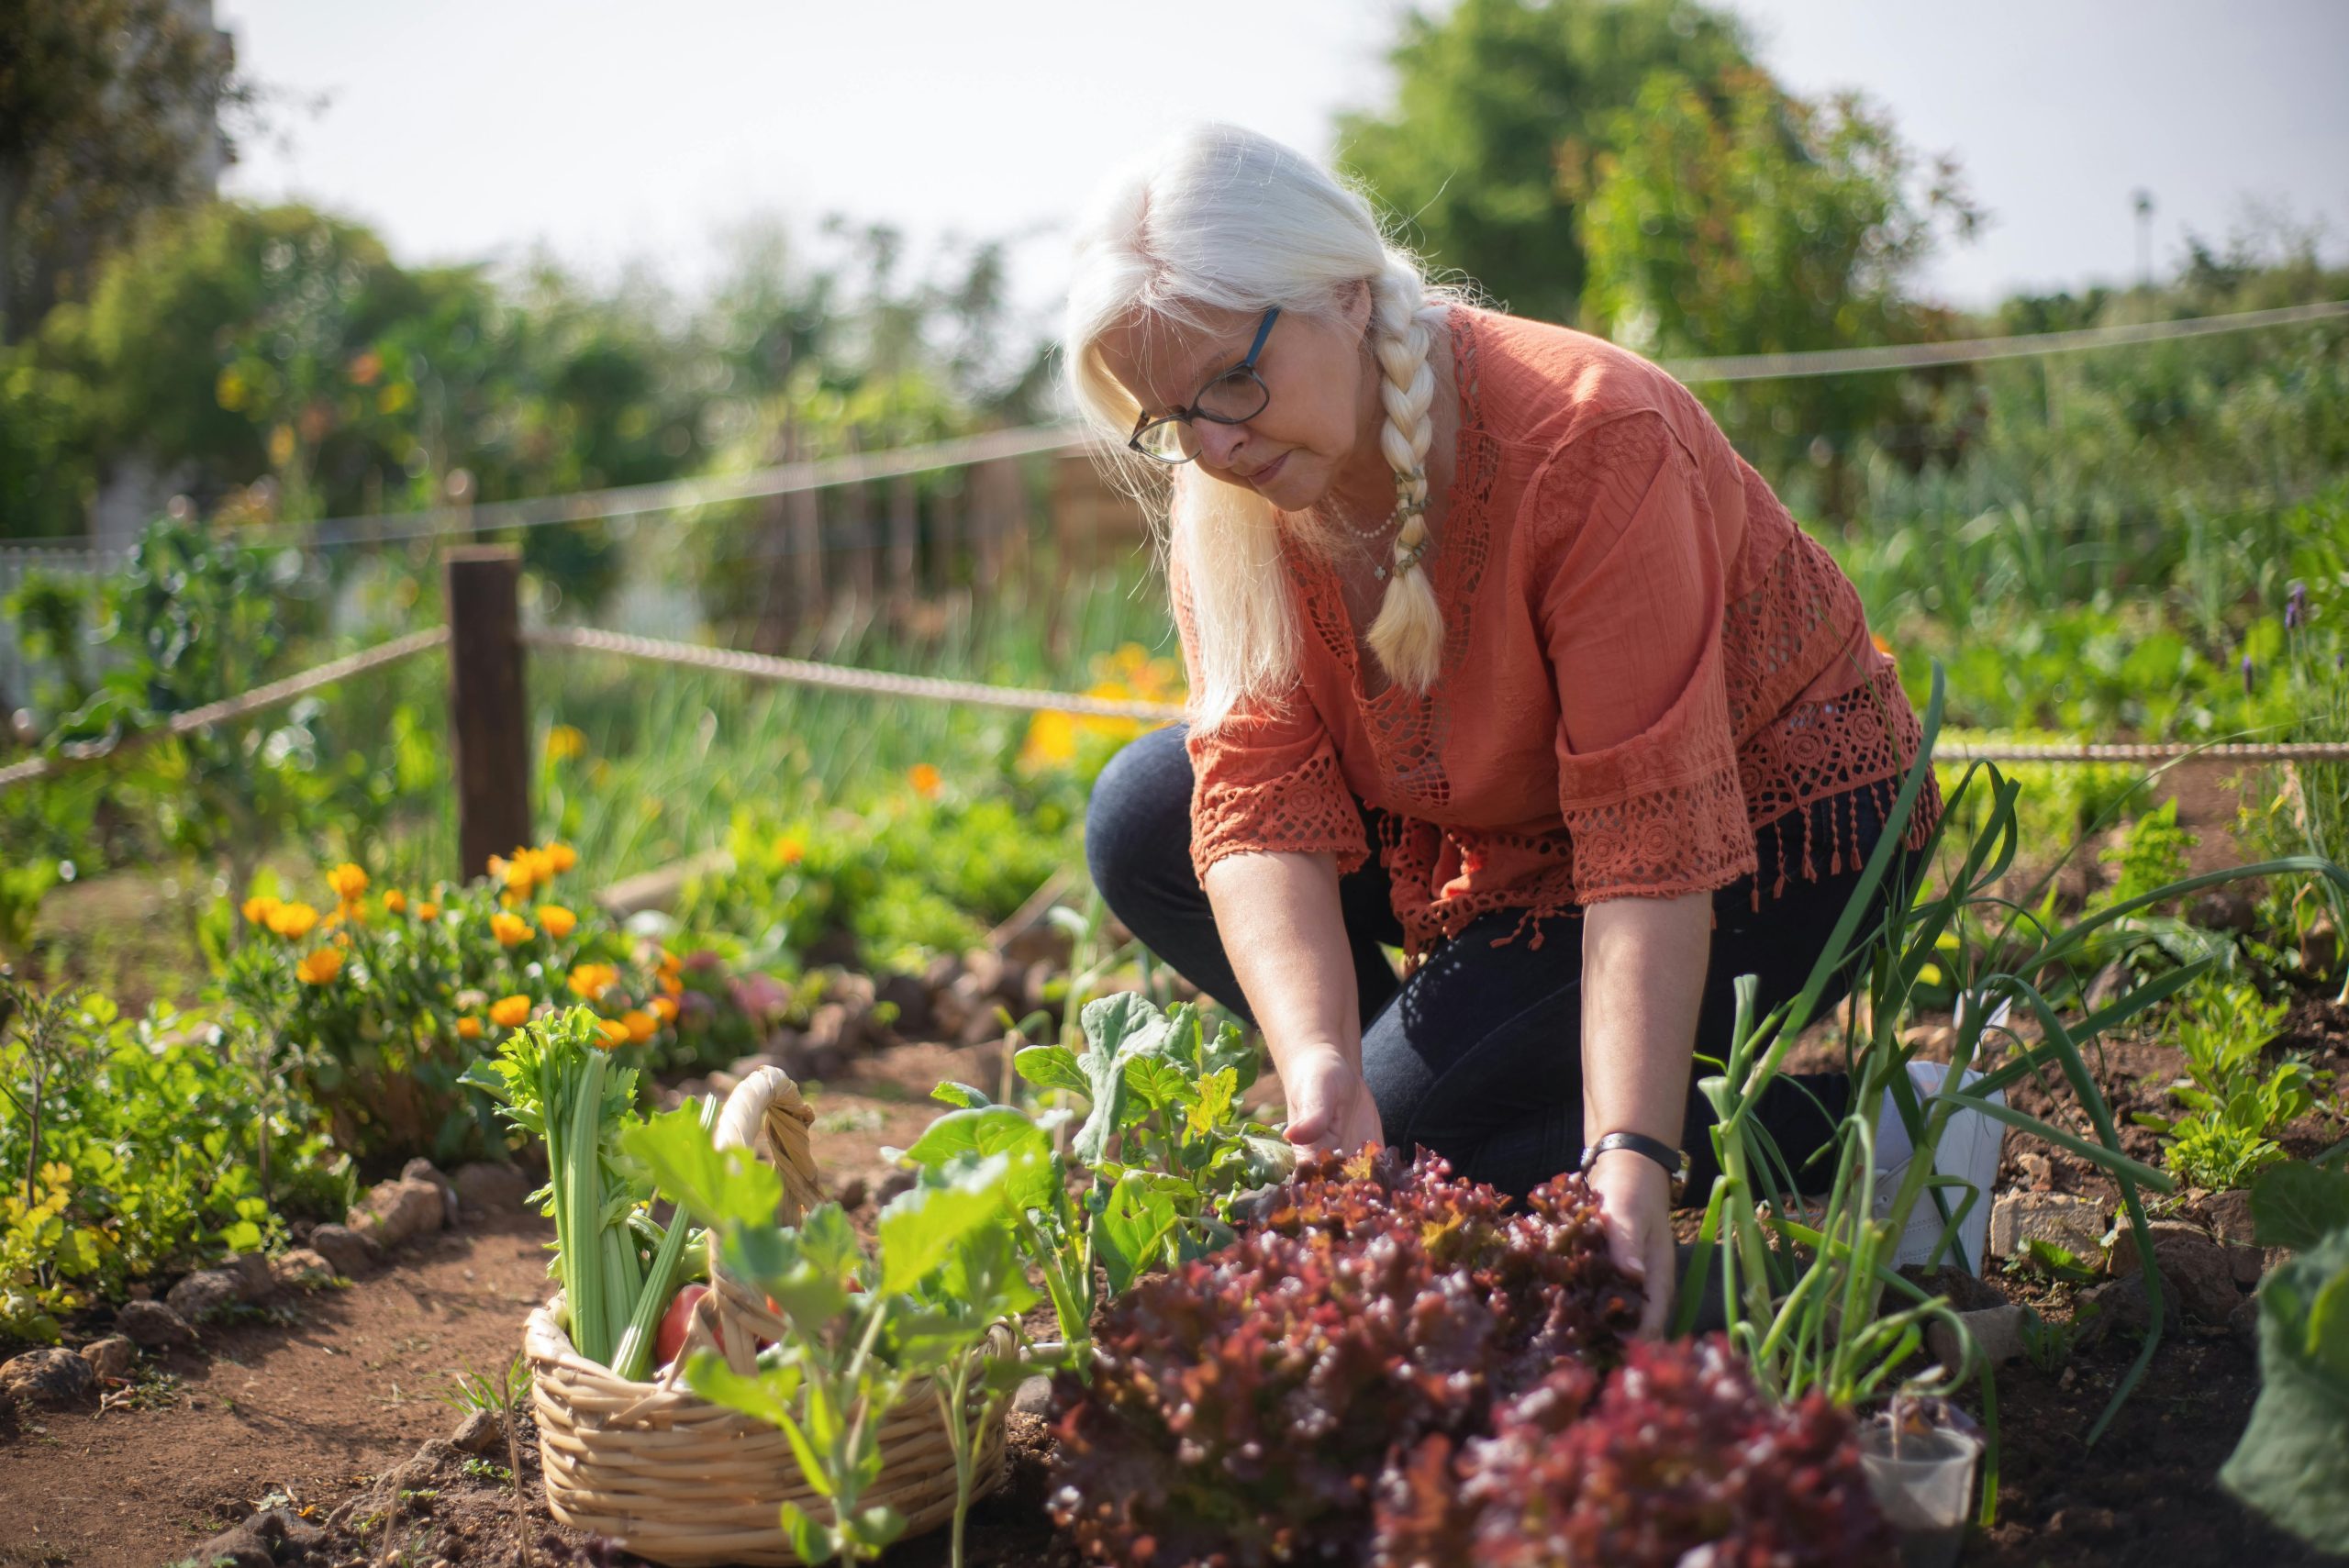  Bahçe İşleriyle Zihinsel ve Fiziksel Sağlığı Geliştirmek